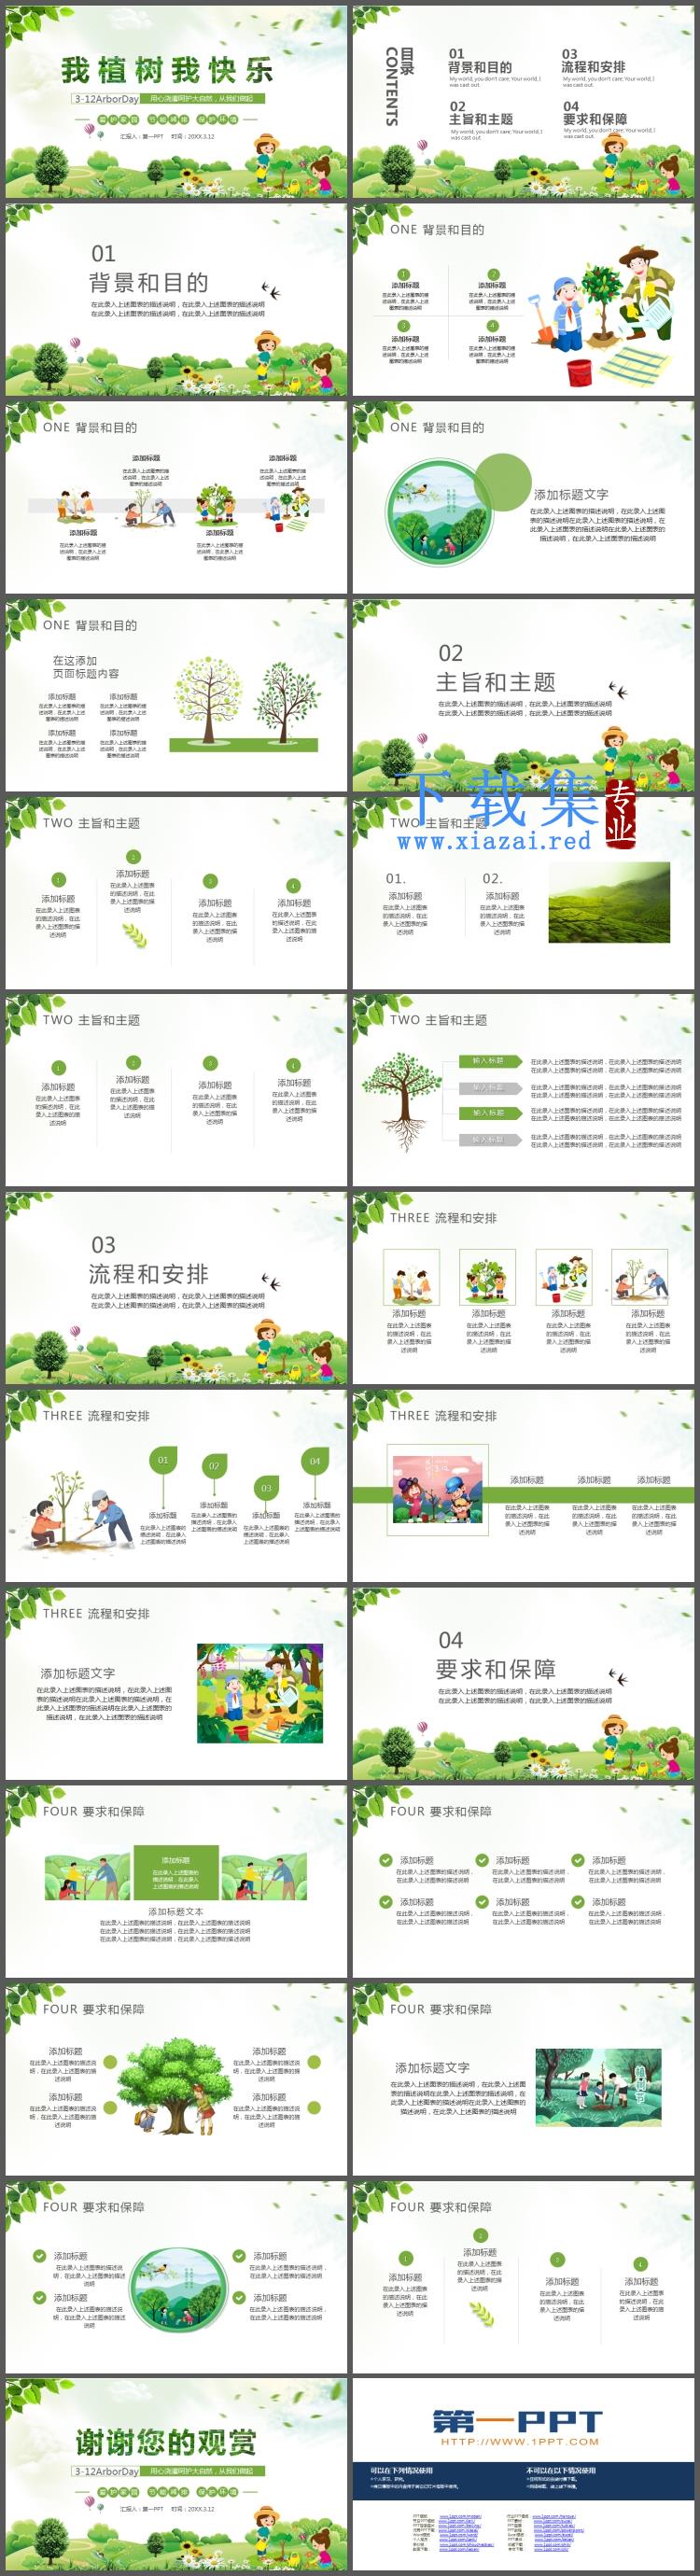 《我植树我快乐》植树节活动策划PPT模板免费下载  第2张